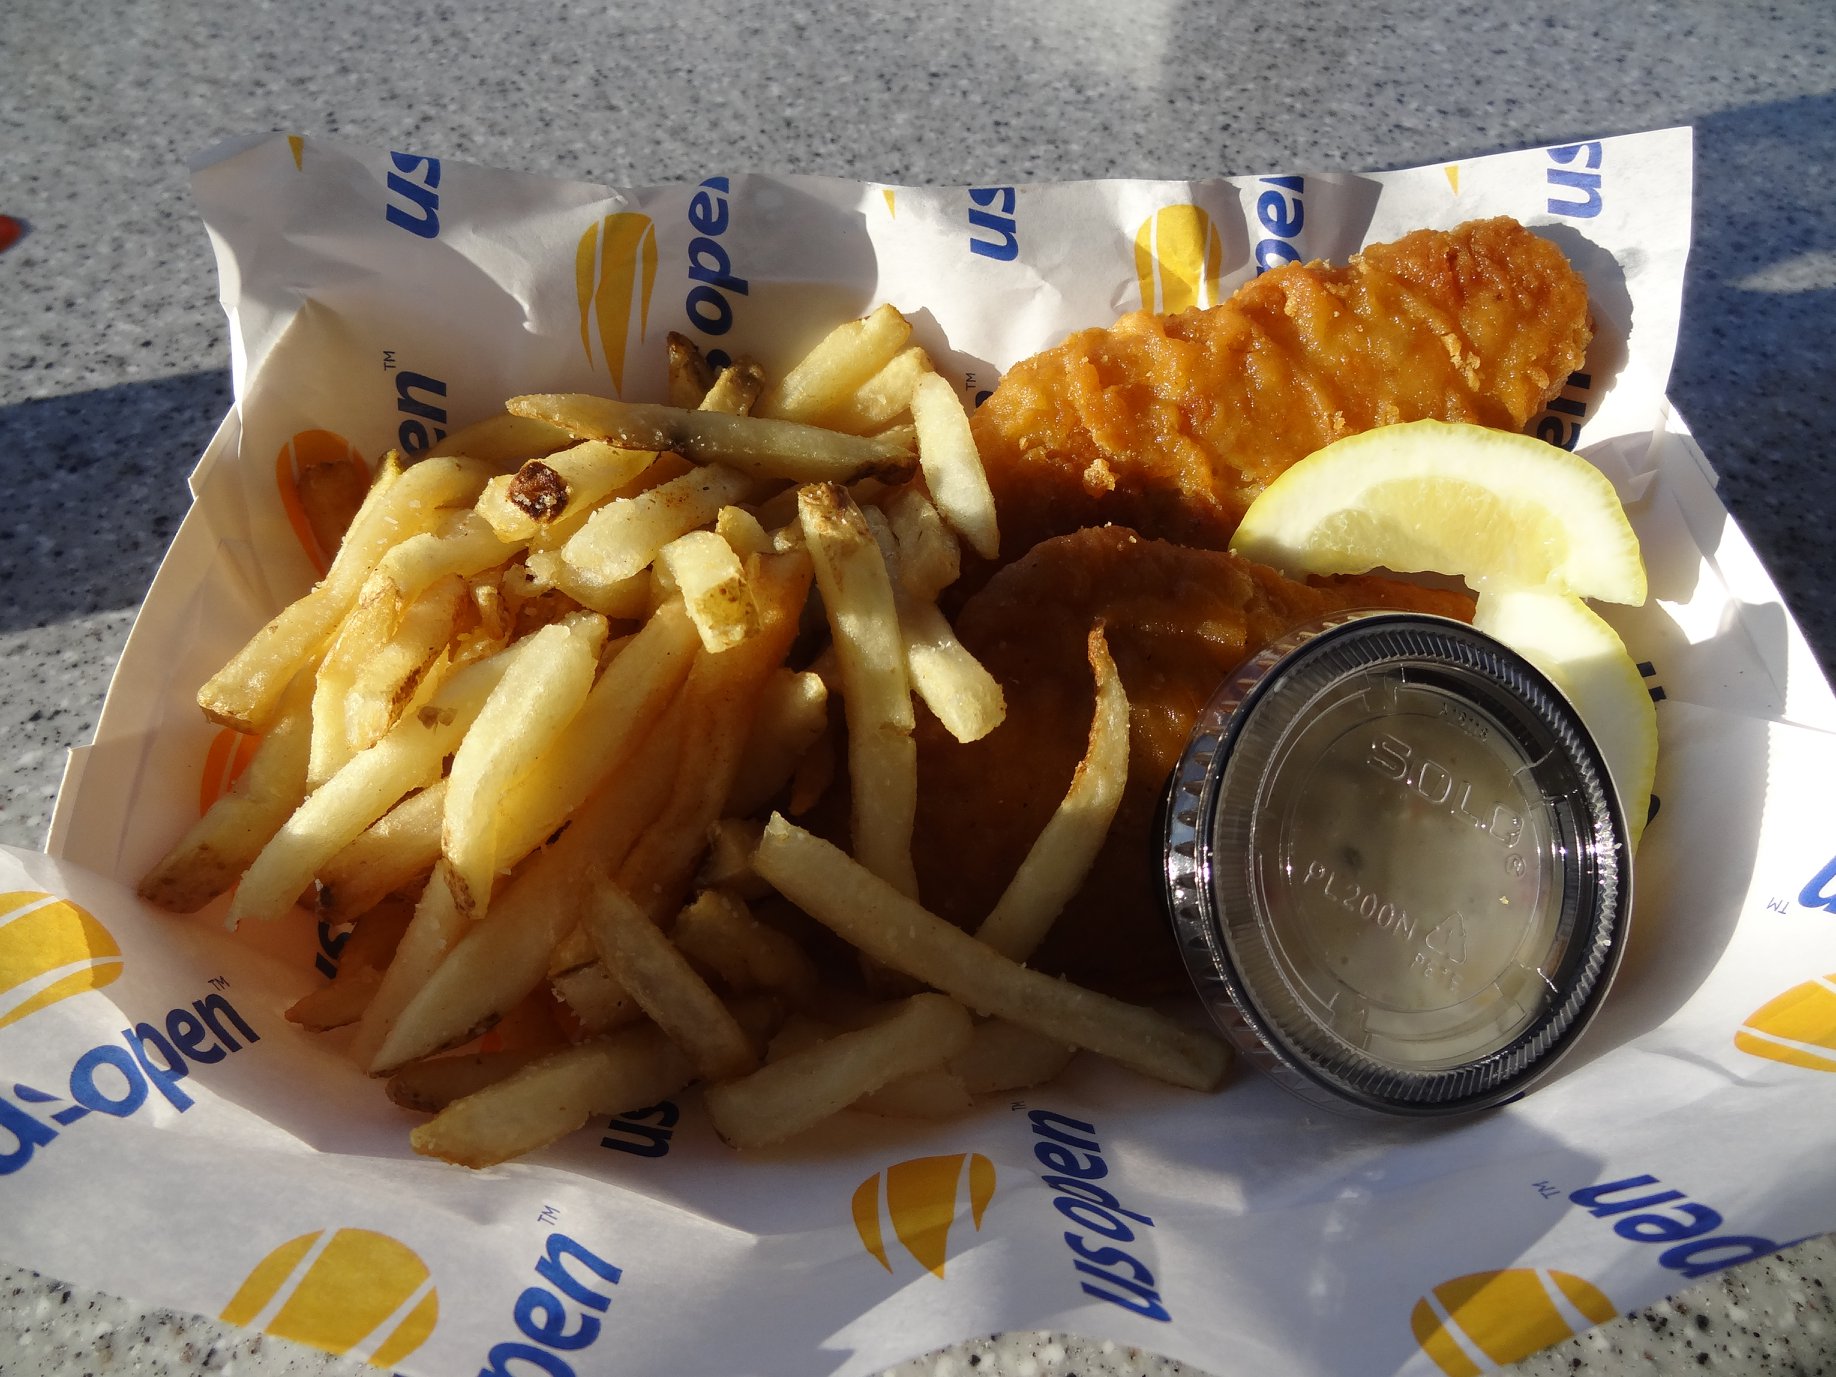 <p>Un Fish & Chips à 15$, les plats sont chers mais qualitatifs. Le premier prix est sans doute le cornet de frites à 6$. A savoir sinon qu'aux USA les bières coutent autour des 12$ pendant les événements sportifs.</p>
